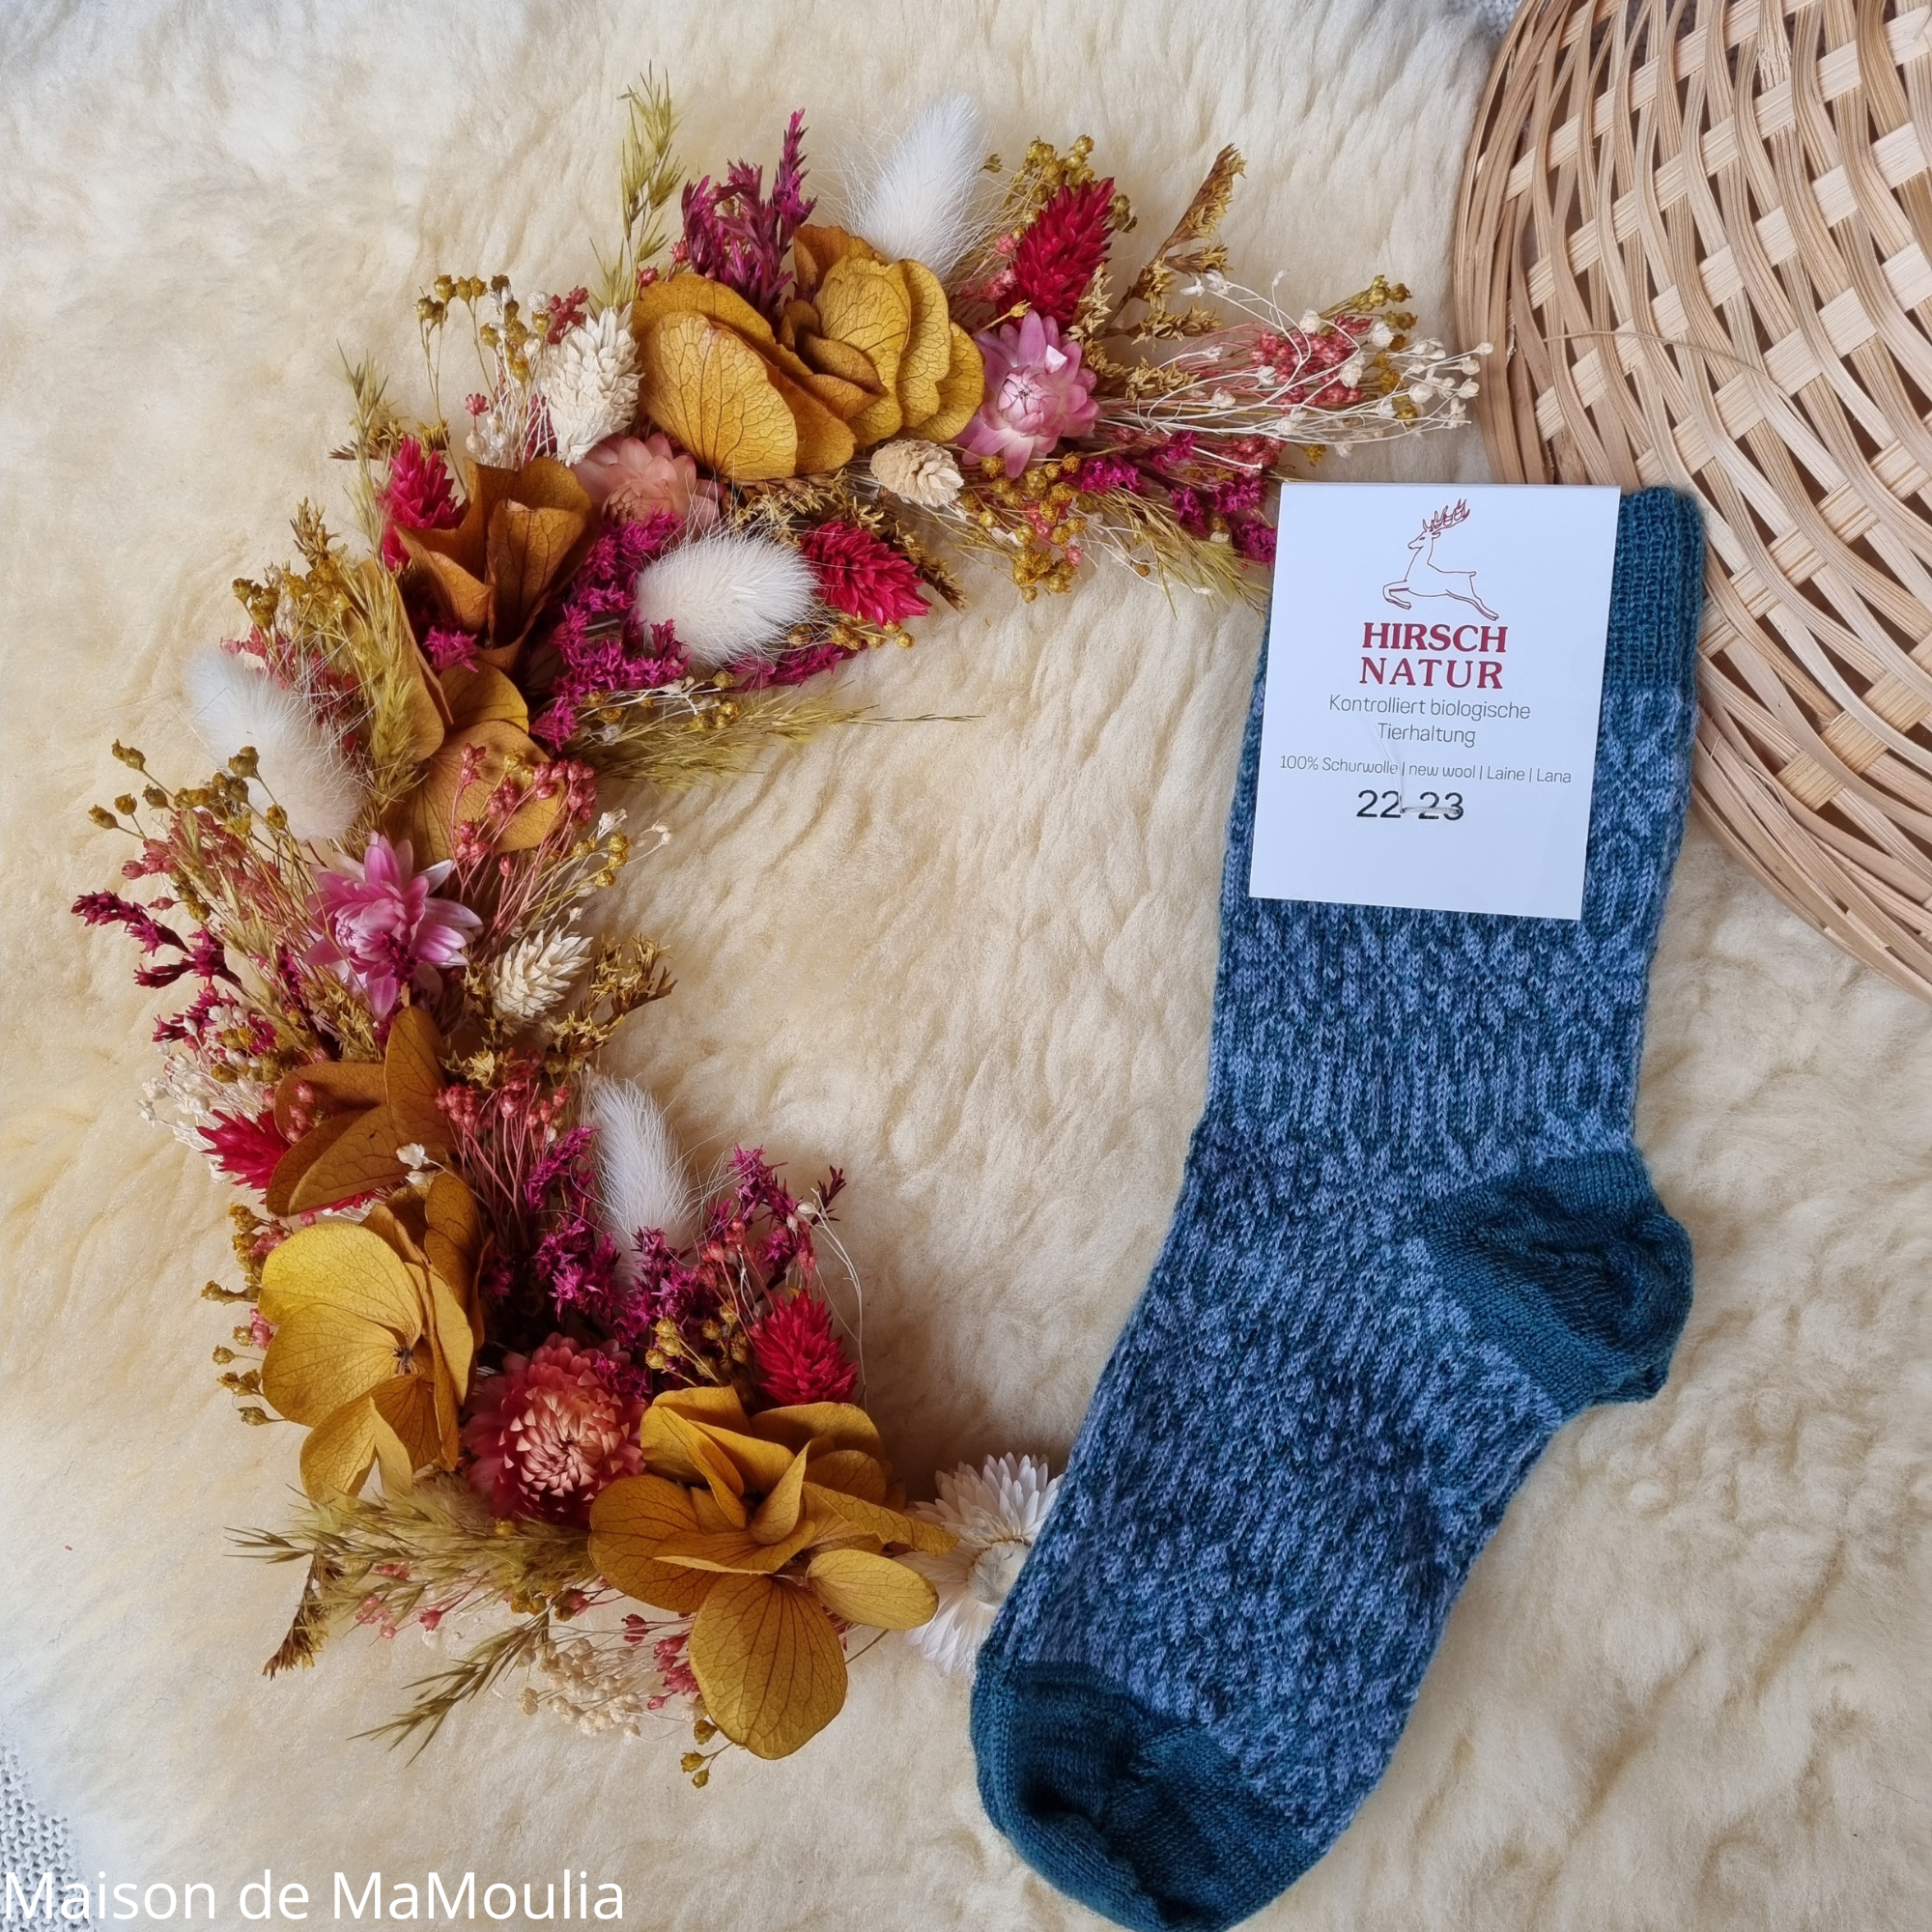 056-chaussettes-fines-chaudes-pure-laine-bio-ecologique-hirsch-natur-bebe-enfant-maison-de-mamoulia-turquoise